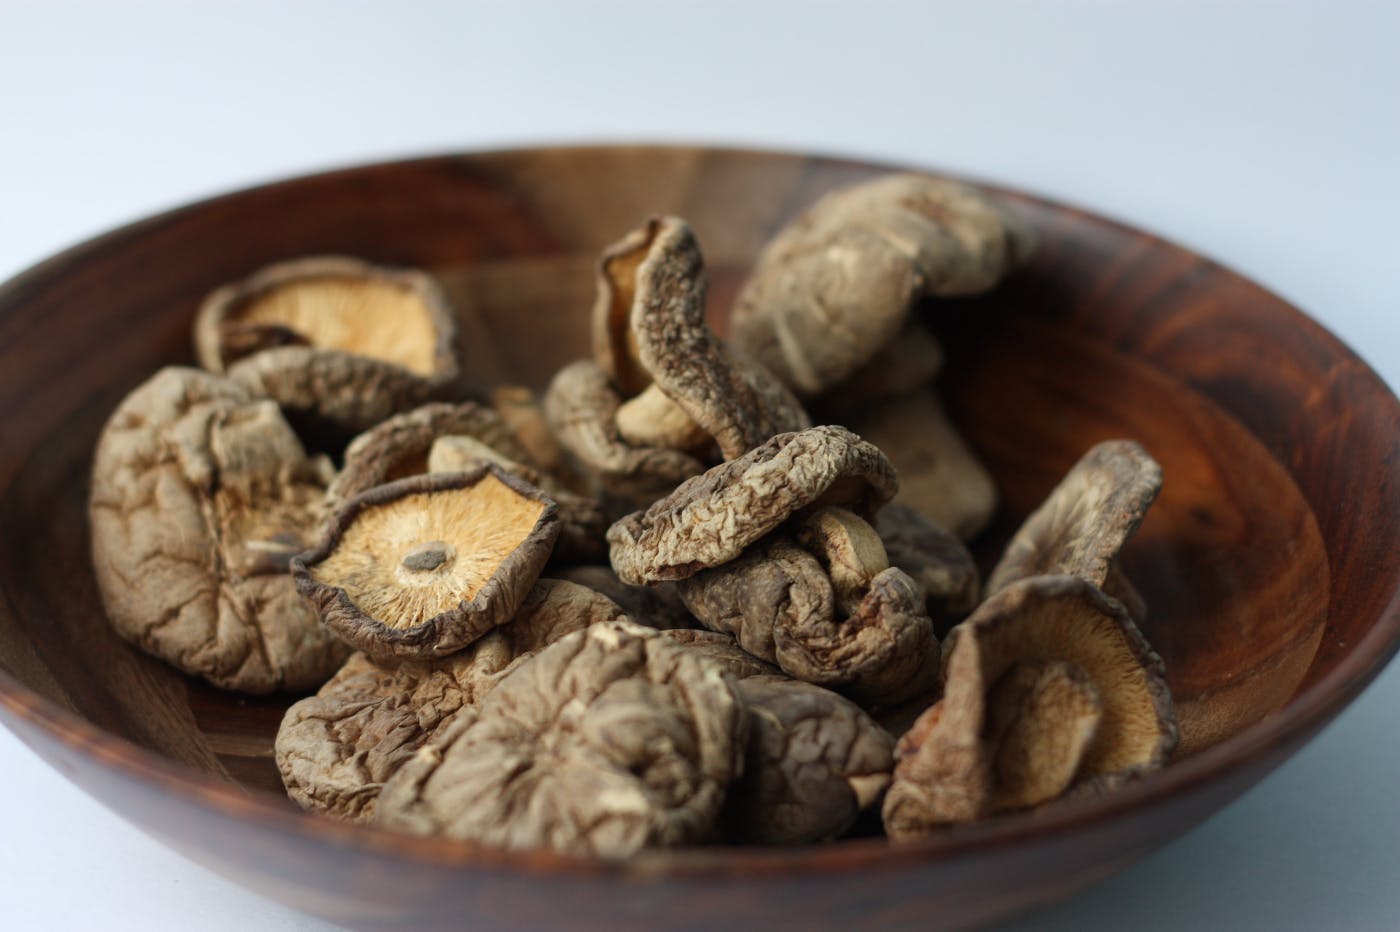 A wooden bowl of mushroom caps